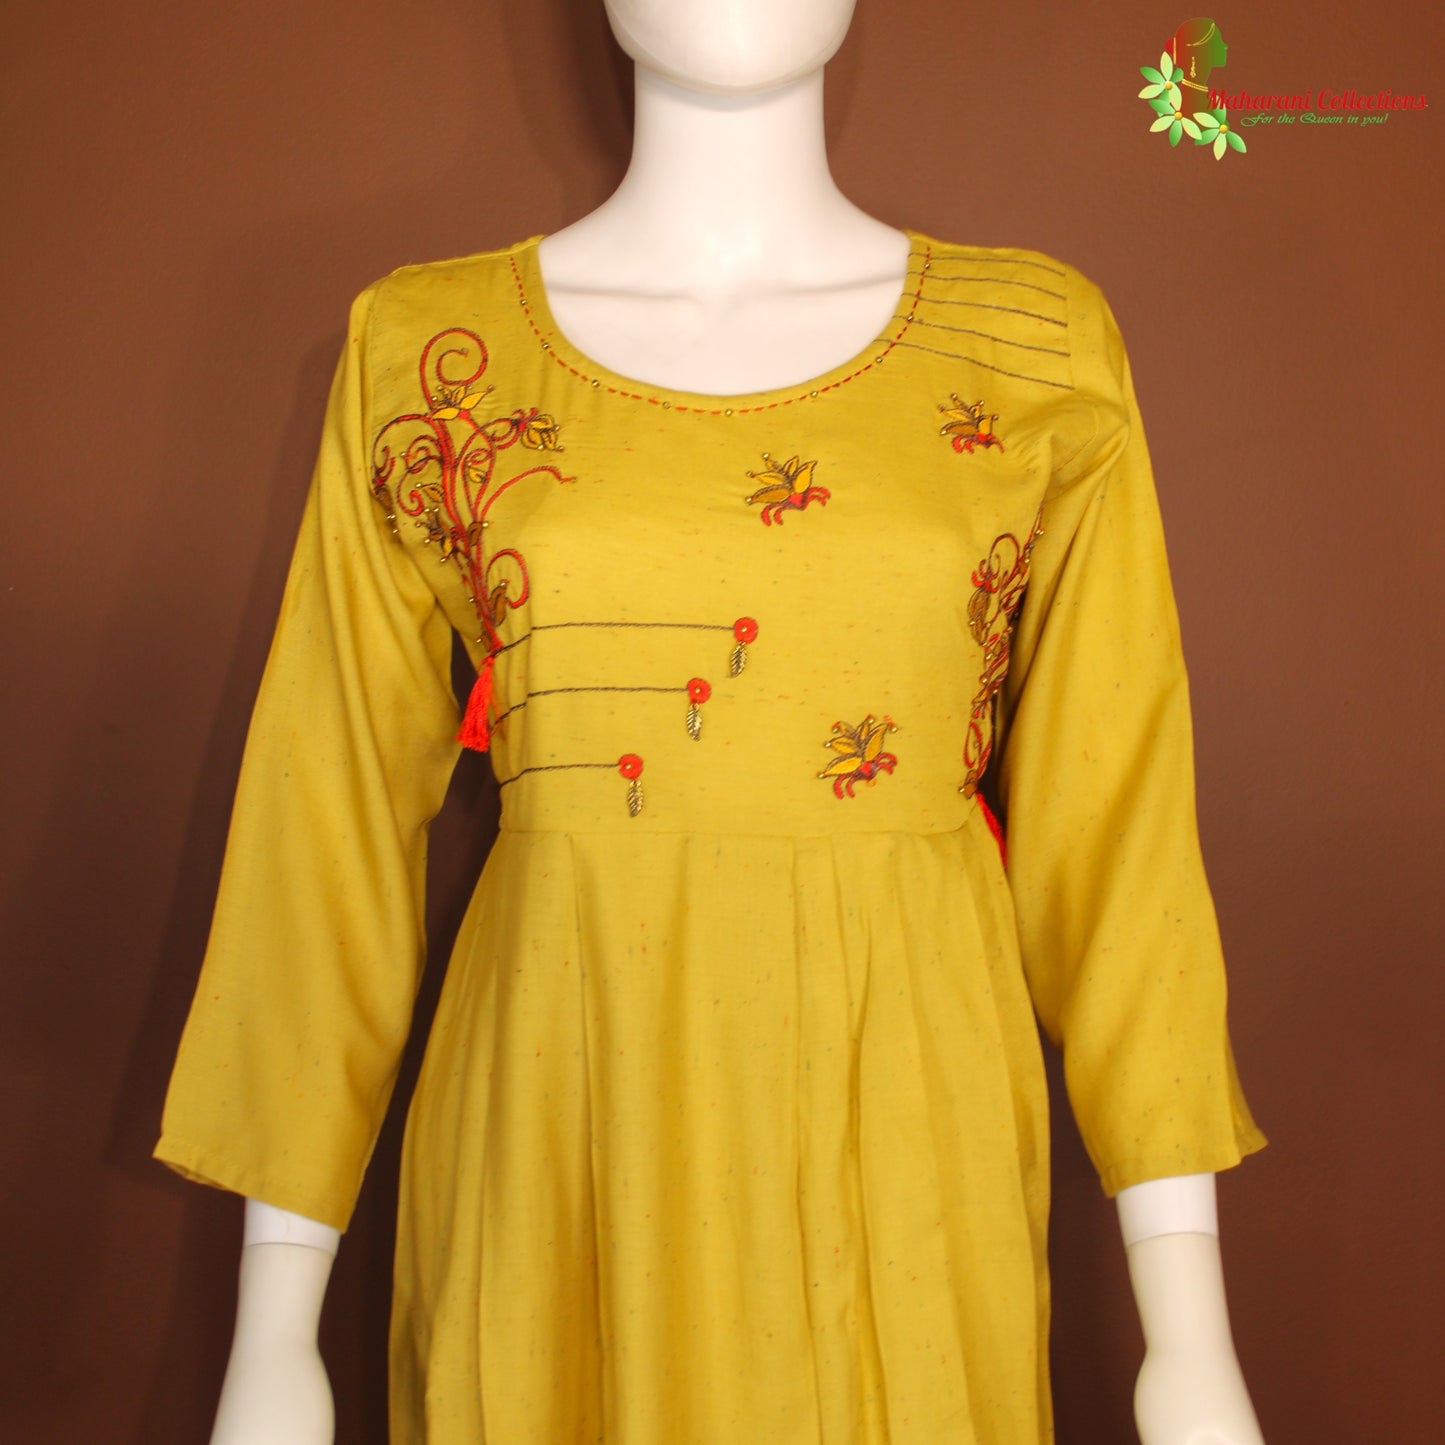 Maharani's Long Dress - Soft Cotton - Light Yellow (M)